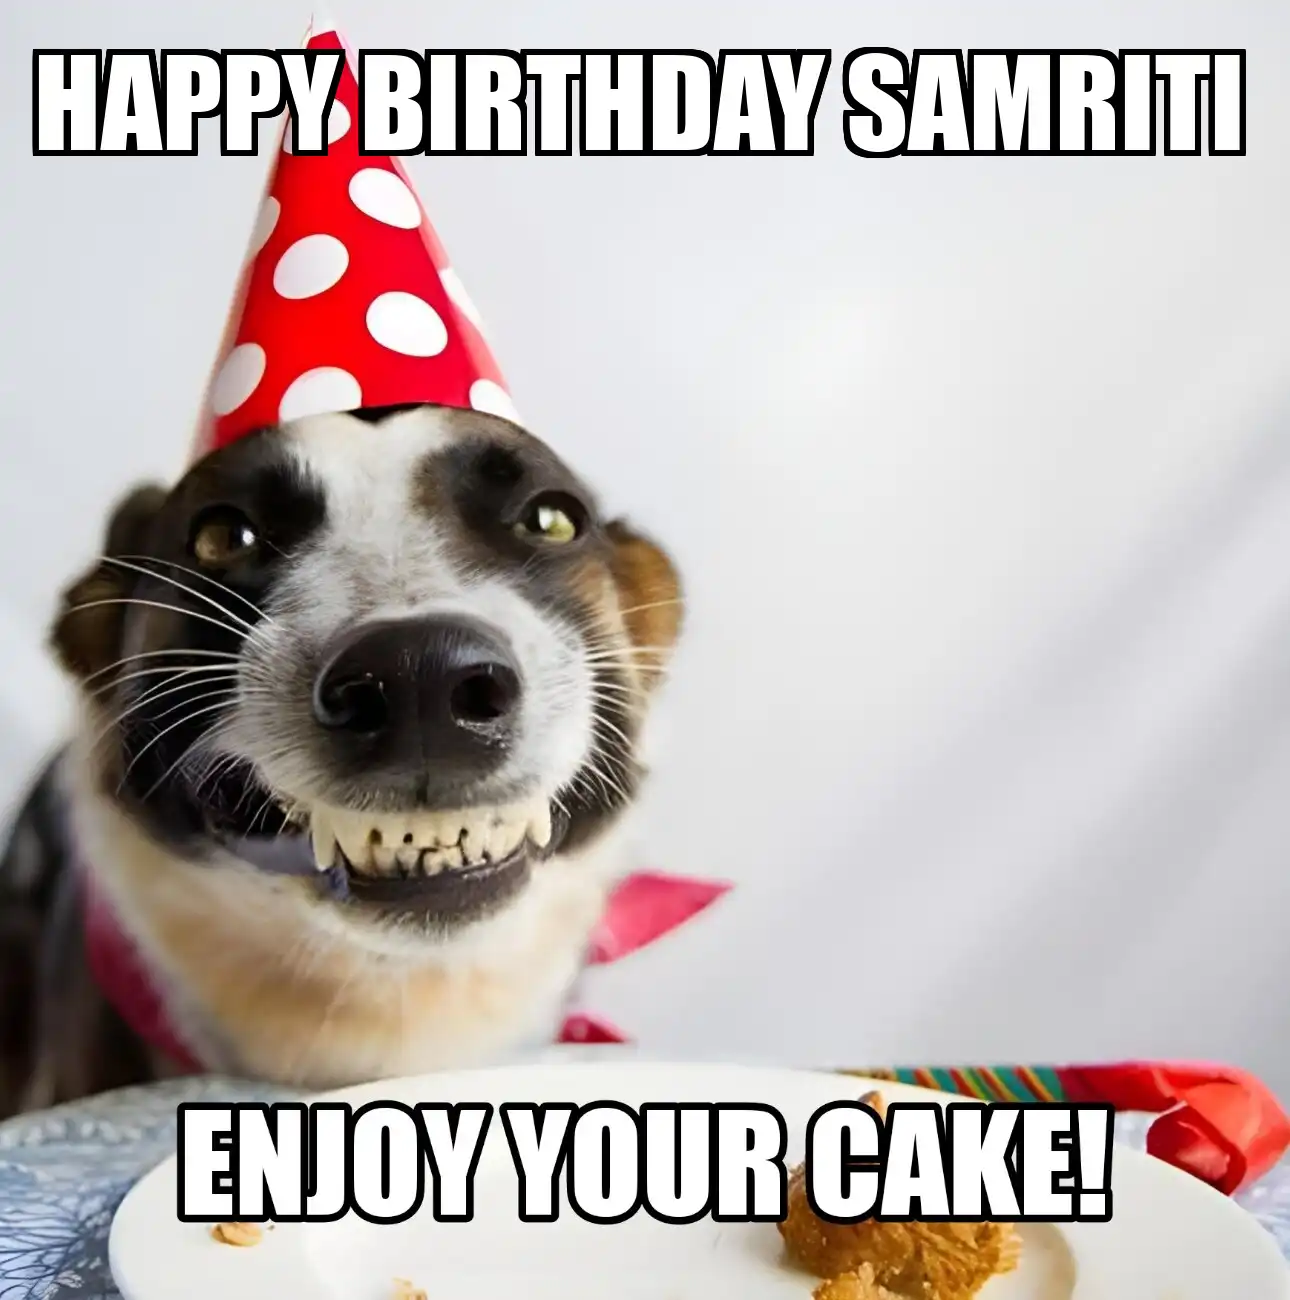 Happy Birthday Samriti Enjoy Your Cake Dog Meme